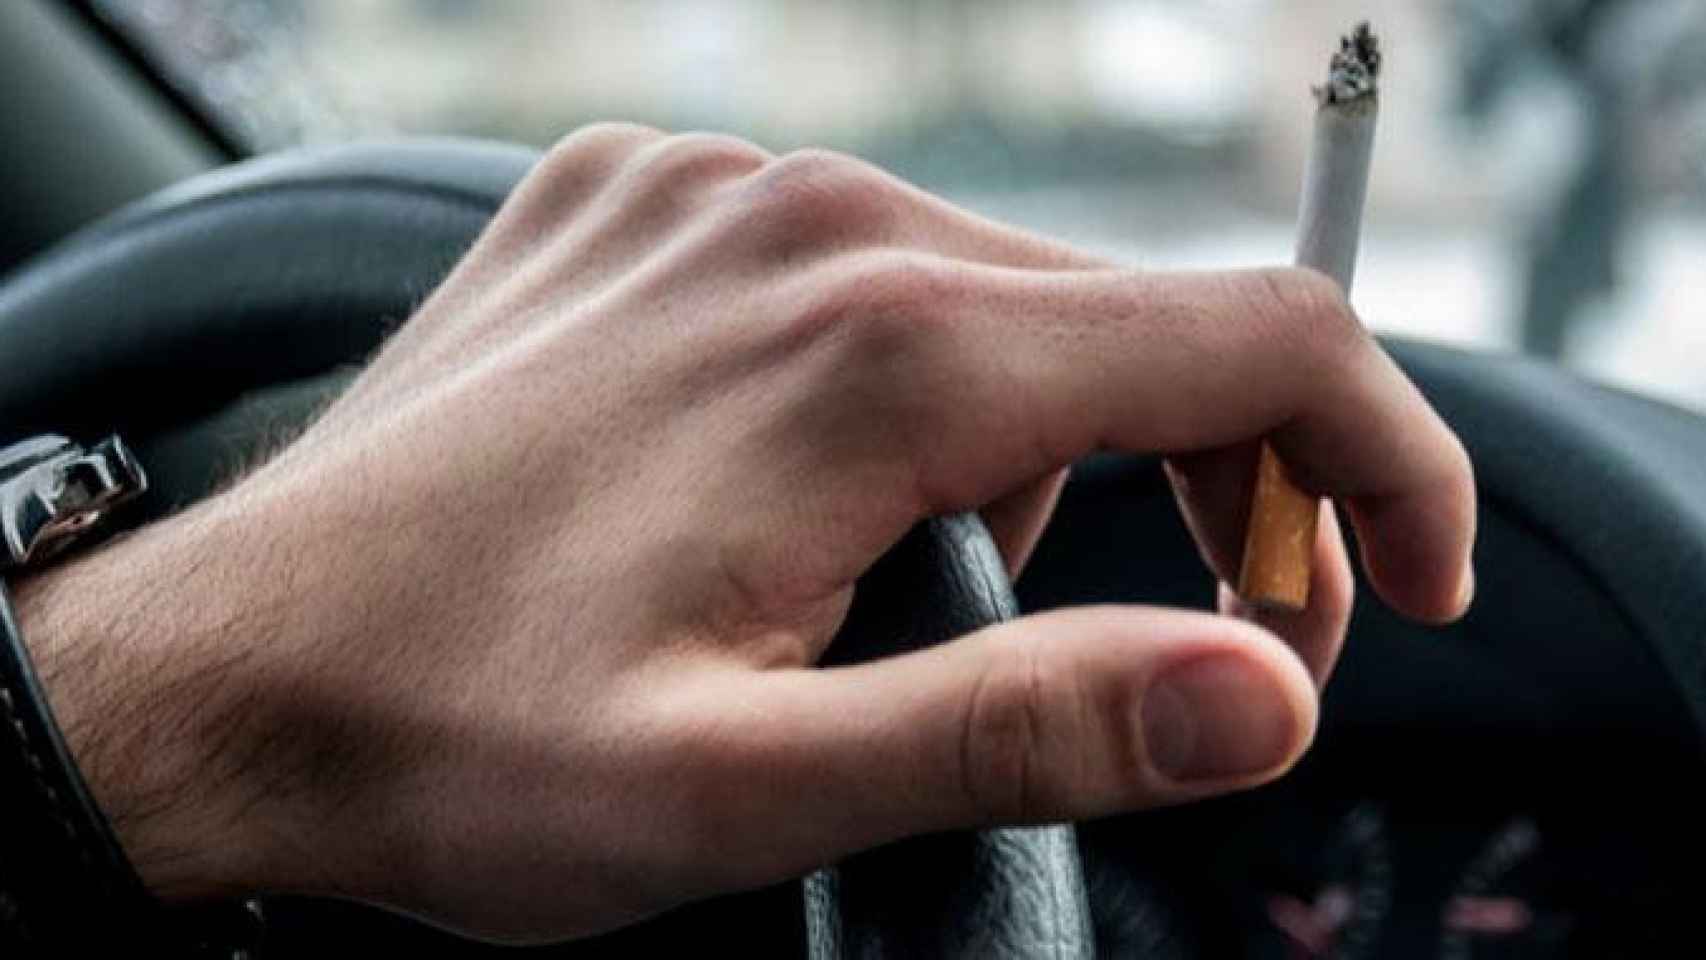 Un hombre fuma un cigarrillo en el coche mientras conduce, en una imagen de archivo / CG